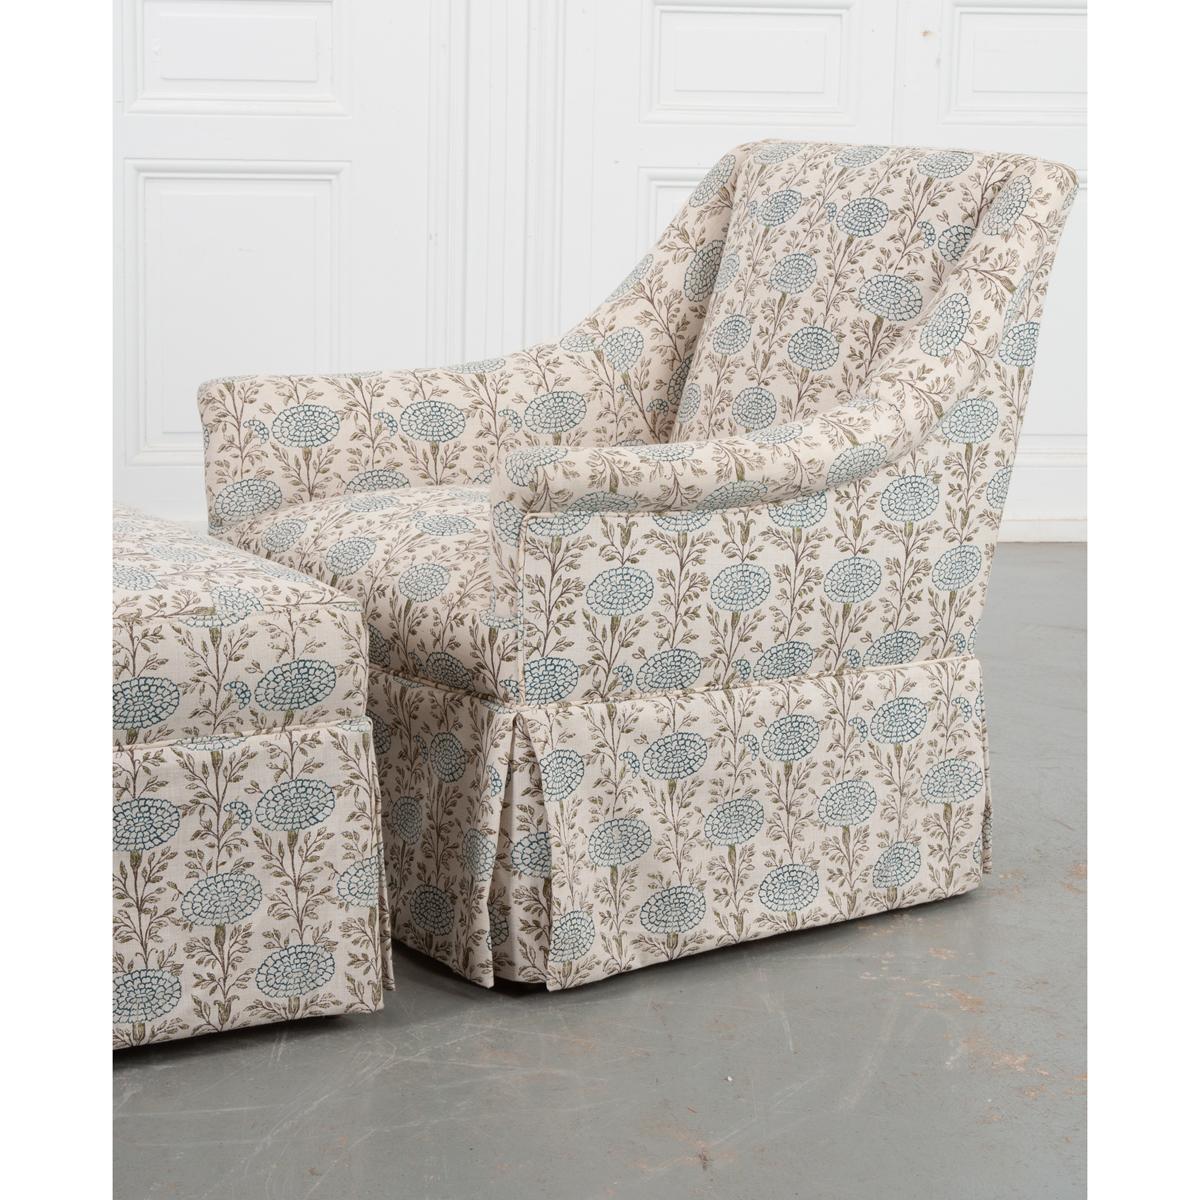 Ein charmantes Sessel- und Ottomane-Duo mit passendem Lisa Fine-Stoff. Dieses zierliche, von Cisco maßgeschneiderte Set bietet einen bequemen und stilvollen Ort zum Entspannen, ohne zu viel Platz einzuschränken. Das sich wiederholende blaue